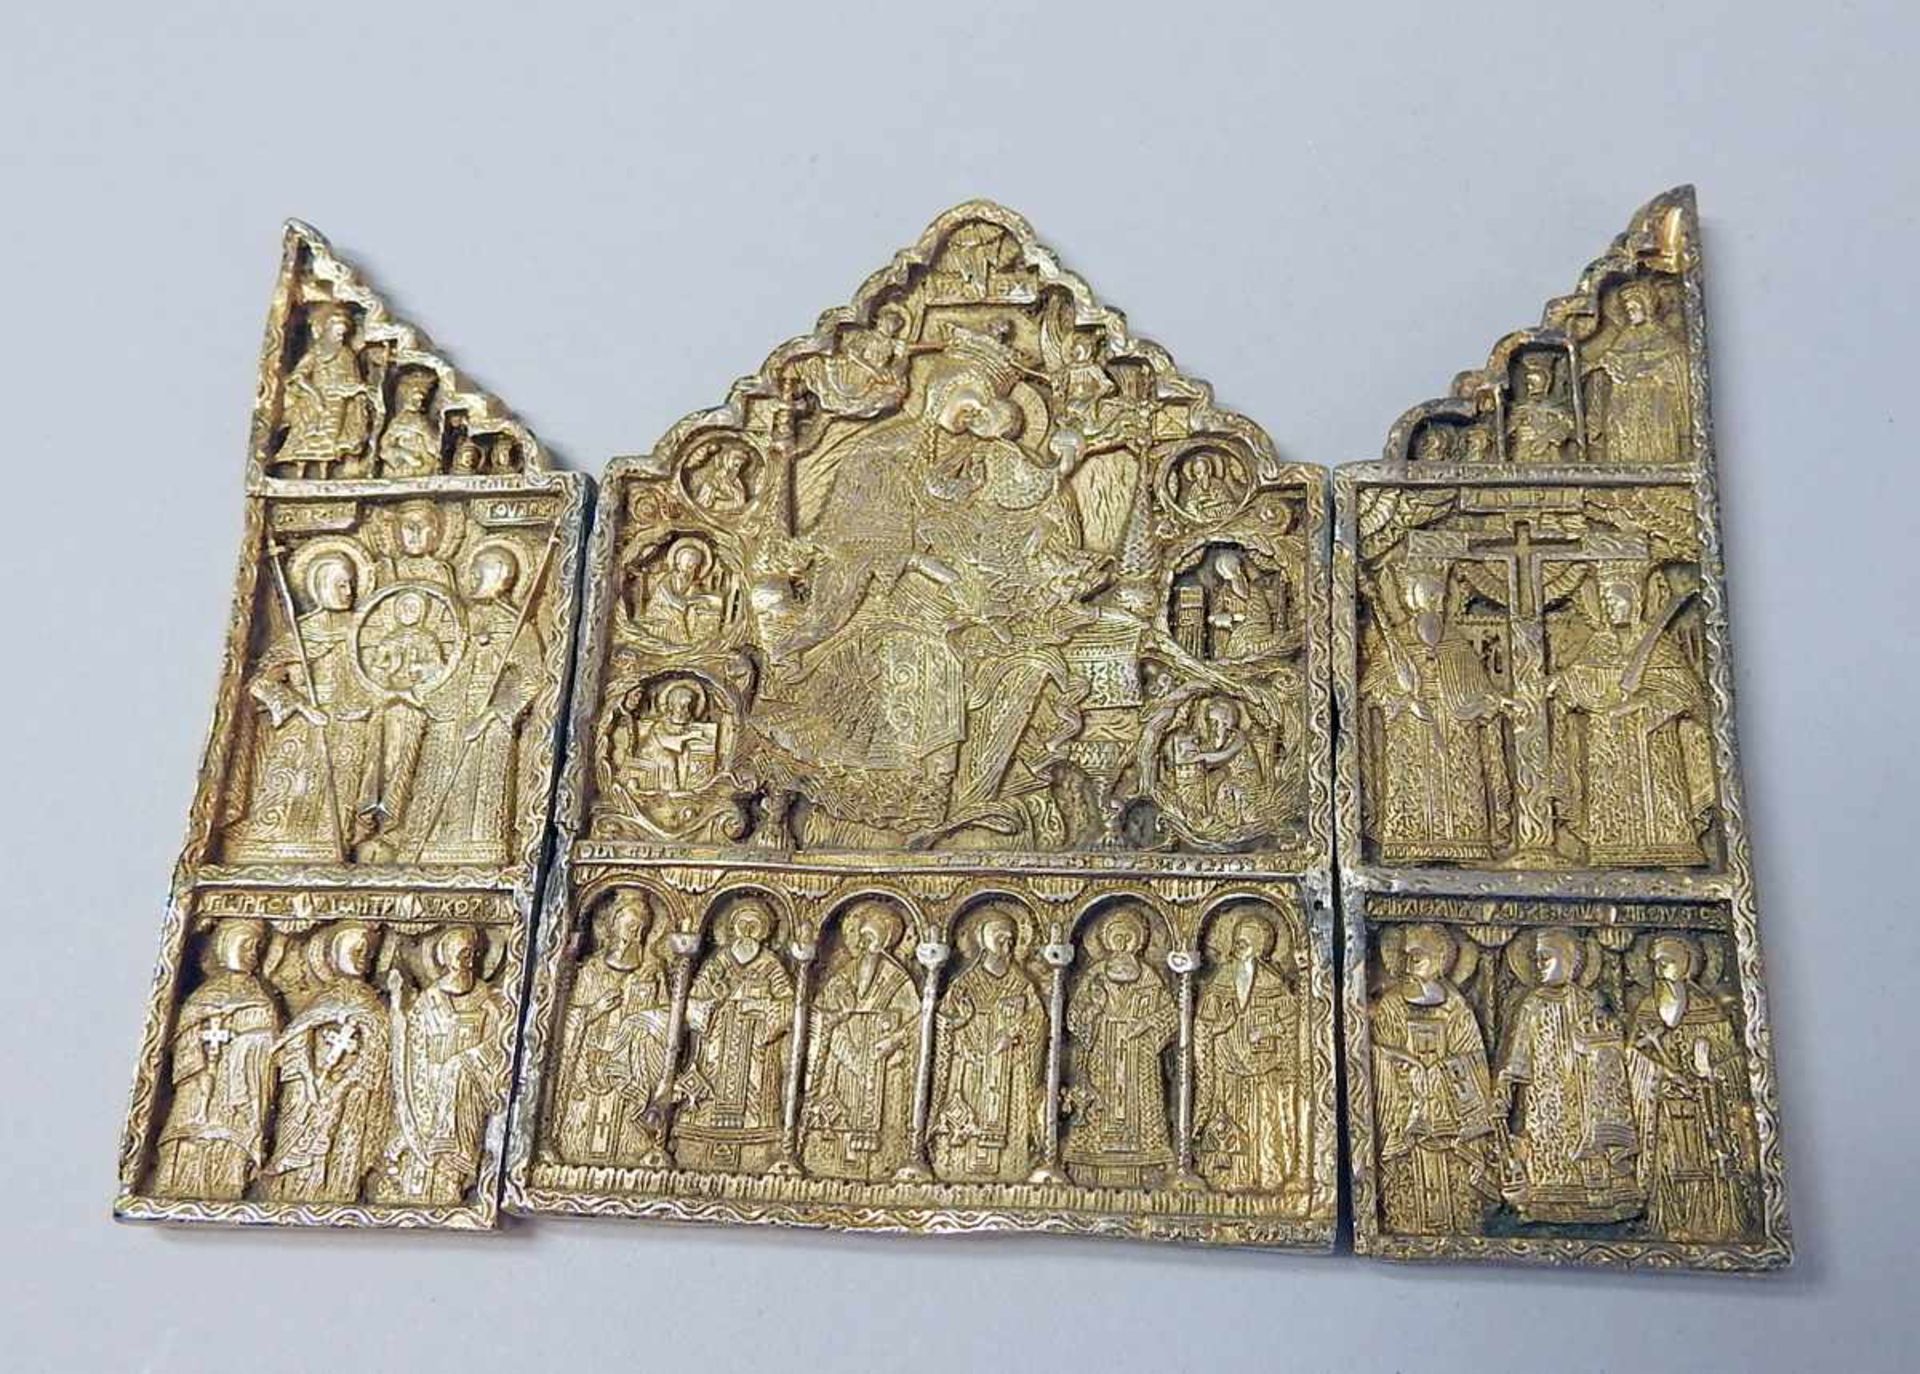 Reiseikone Silber 84 zolotniki, vergoldet. Triptychon mit griechisch-orthodoxer Ikonographie. Punzen